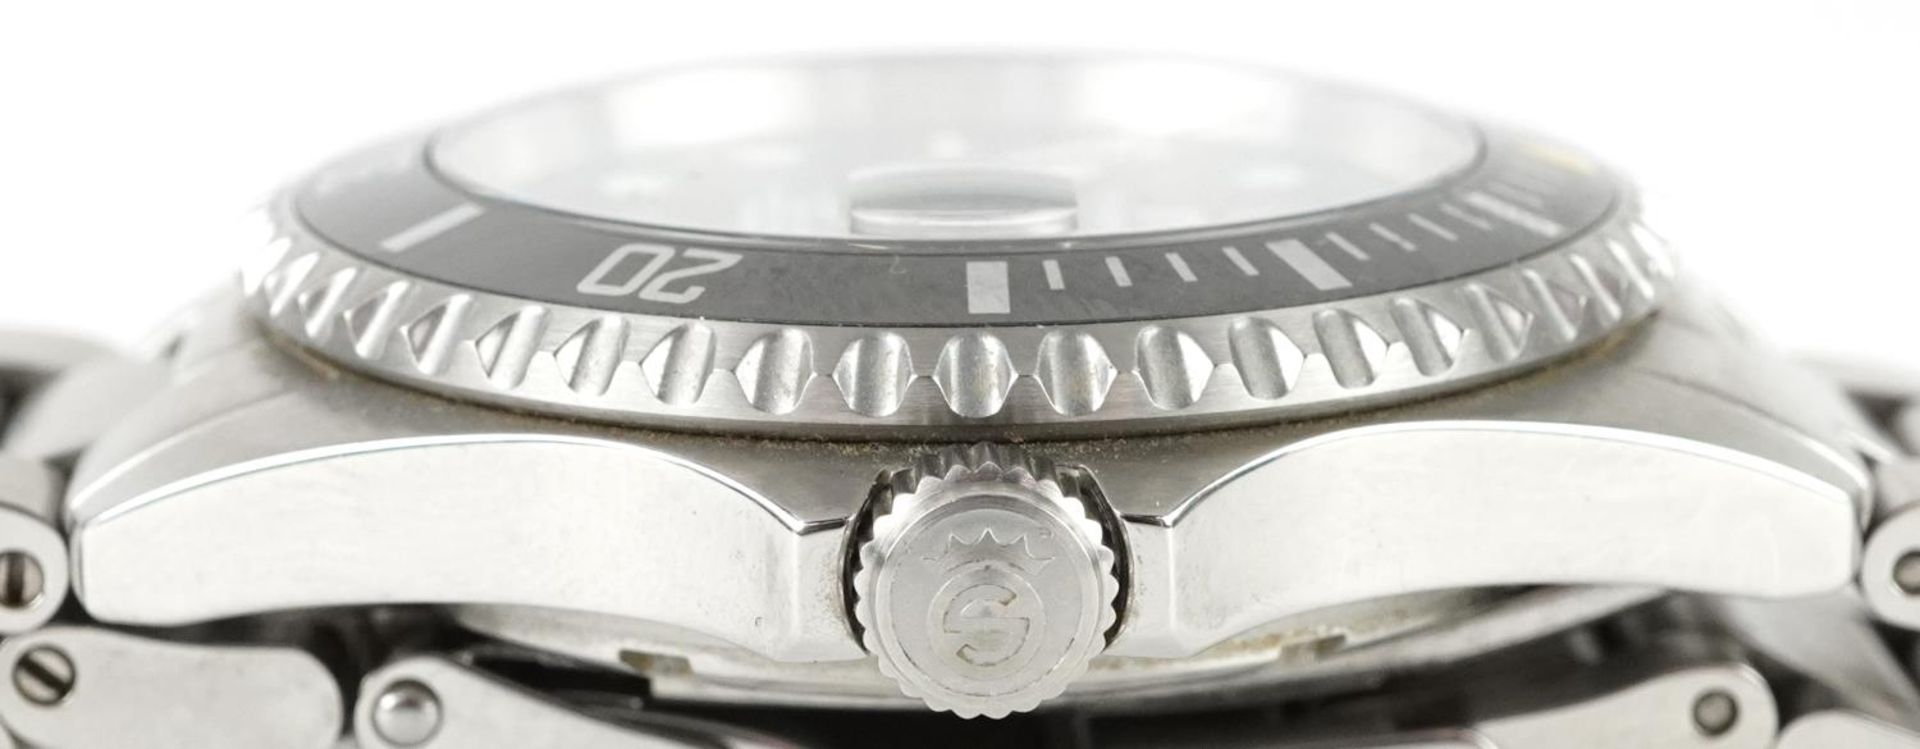 Steinhart, gentlemen's Steinhart Ocean One automatic diver's wristwatch with date aperture, 42mm - Bild 5 aus 5